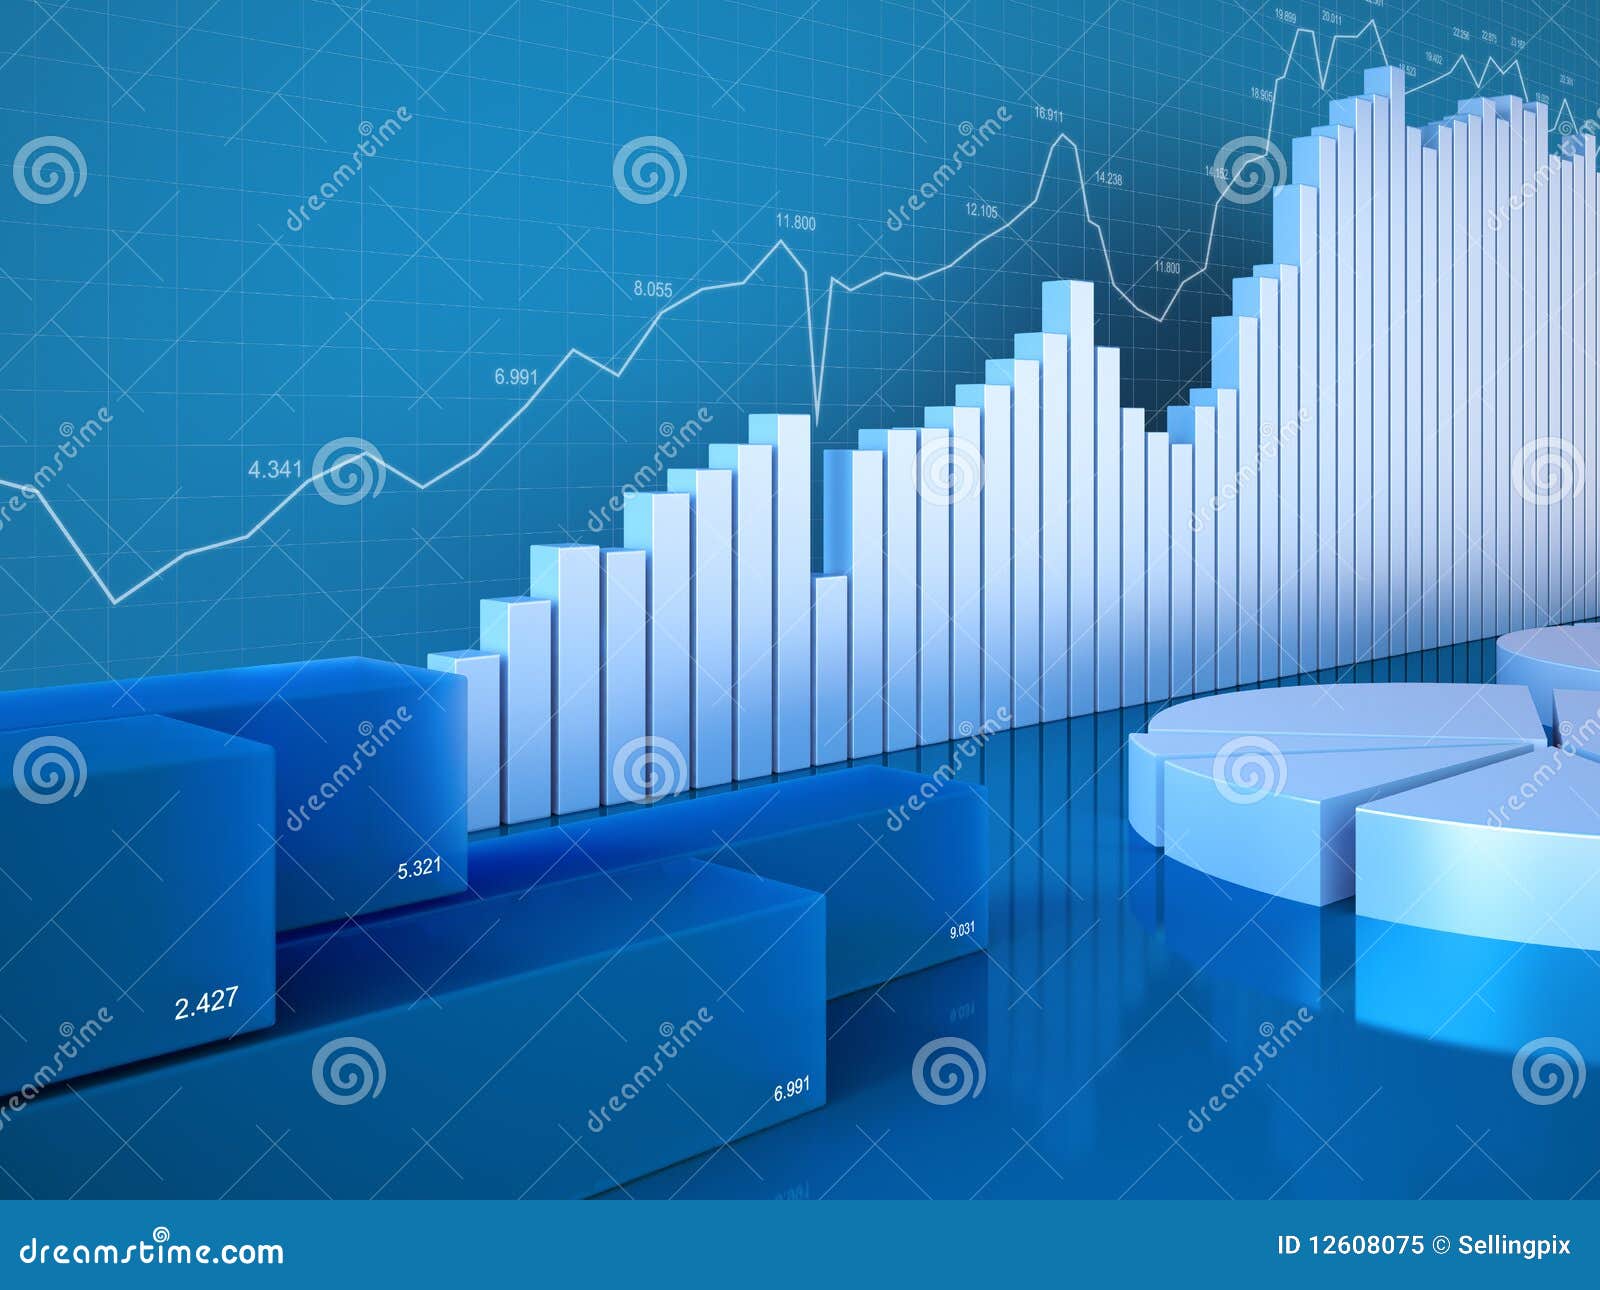 statistics-charts-12608075.jpg